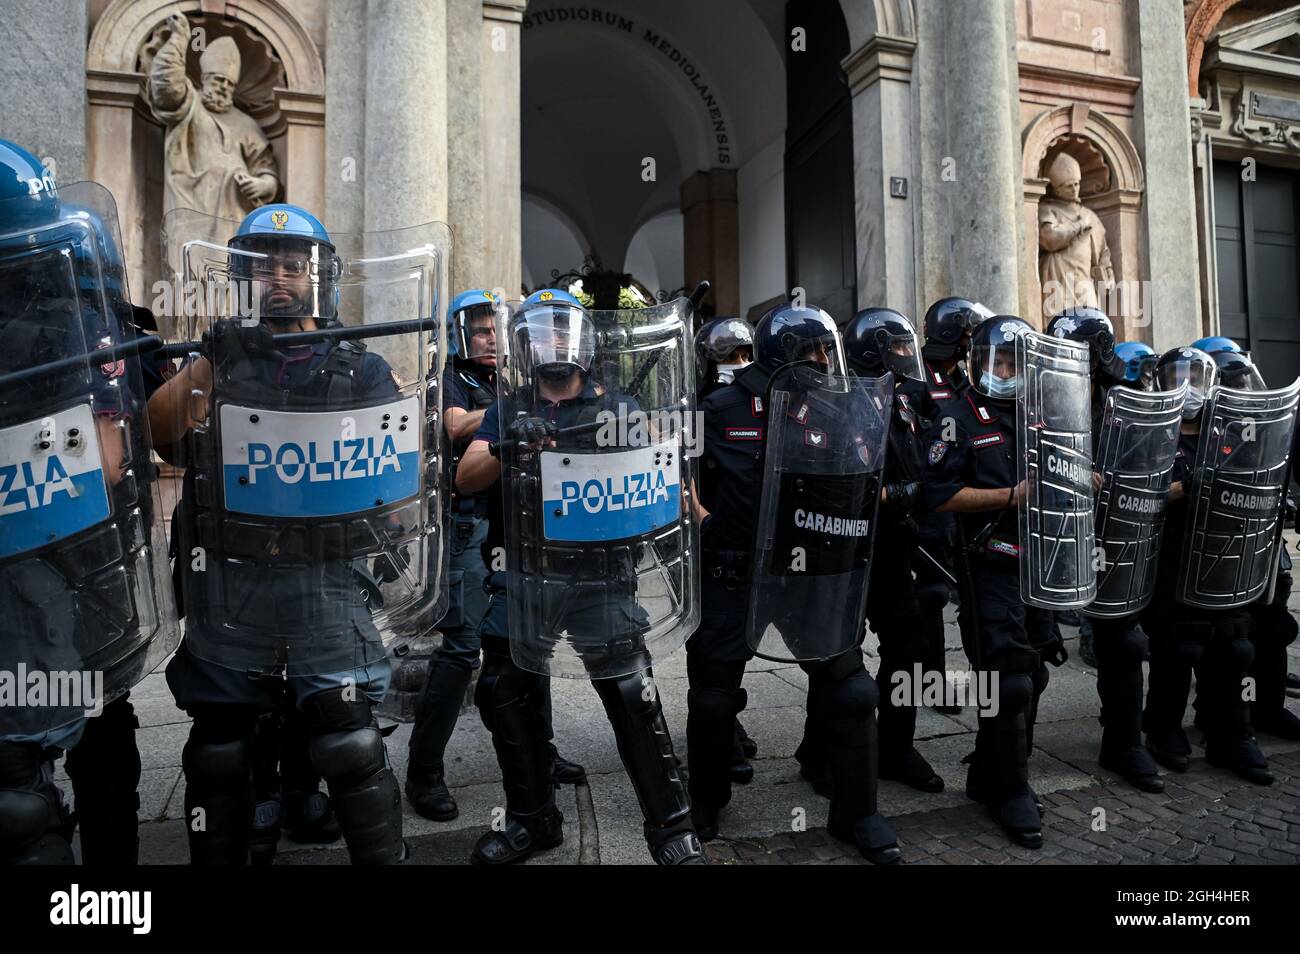 Mailand, Italien - 5. September 2021: Italienische Polizeibeamte in voller Krawallausrüstung während eines Protestes gegen den obligatorischen Gesundheitsausweis Stockfoto